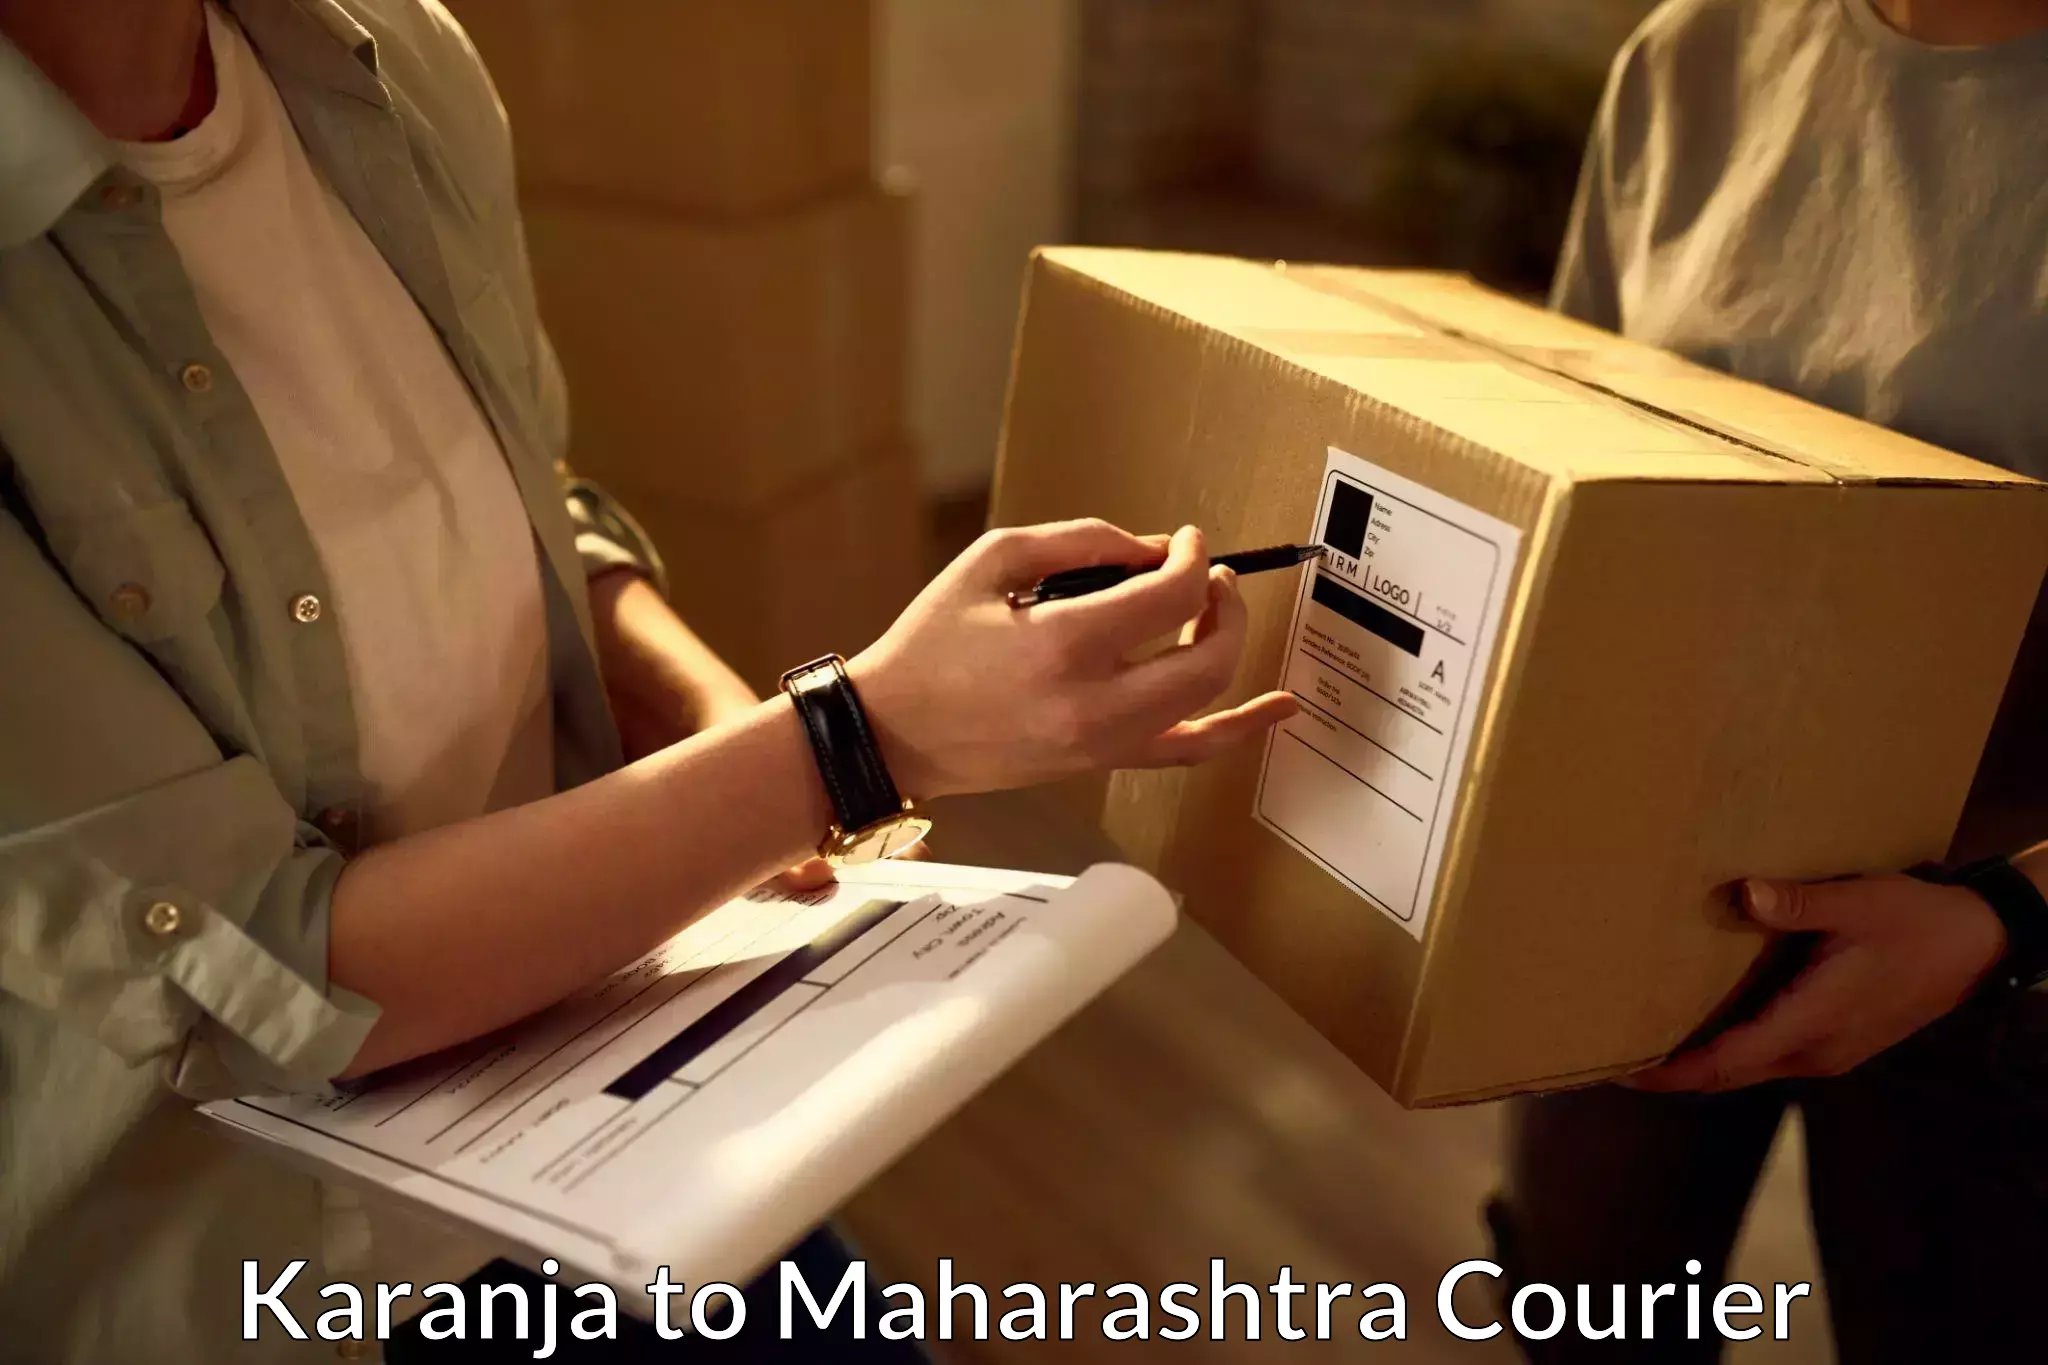 Fast-track shipping solutions Karanja to Shrigonda